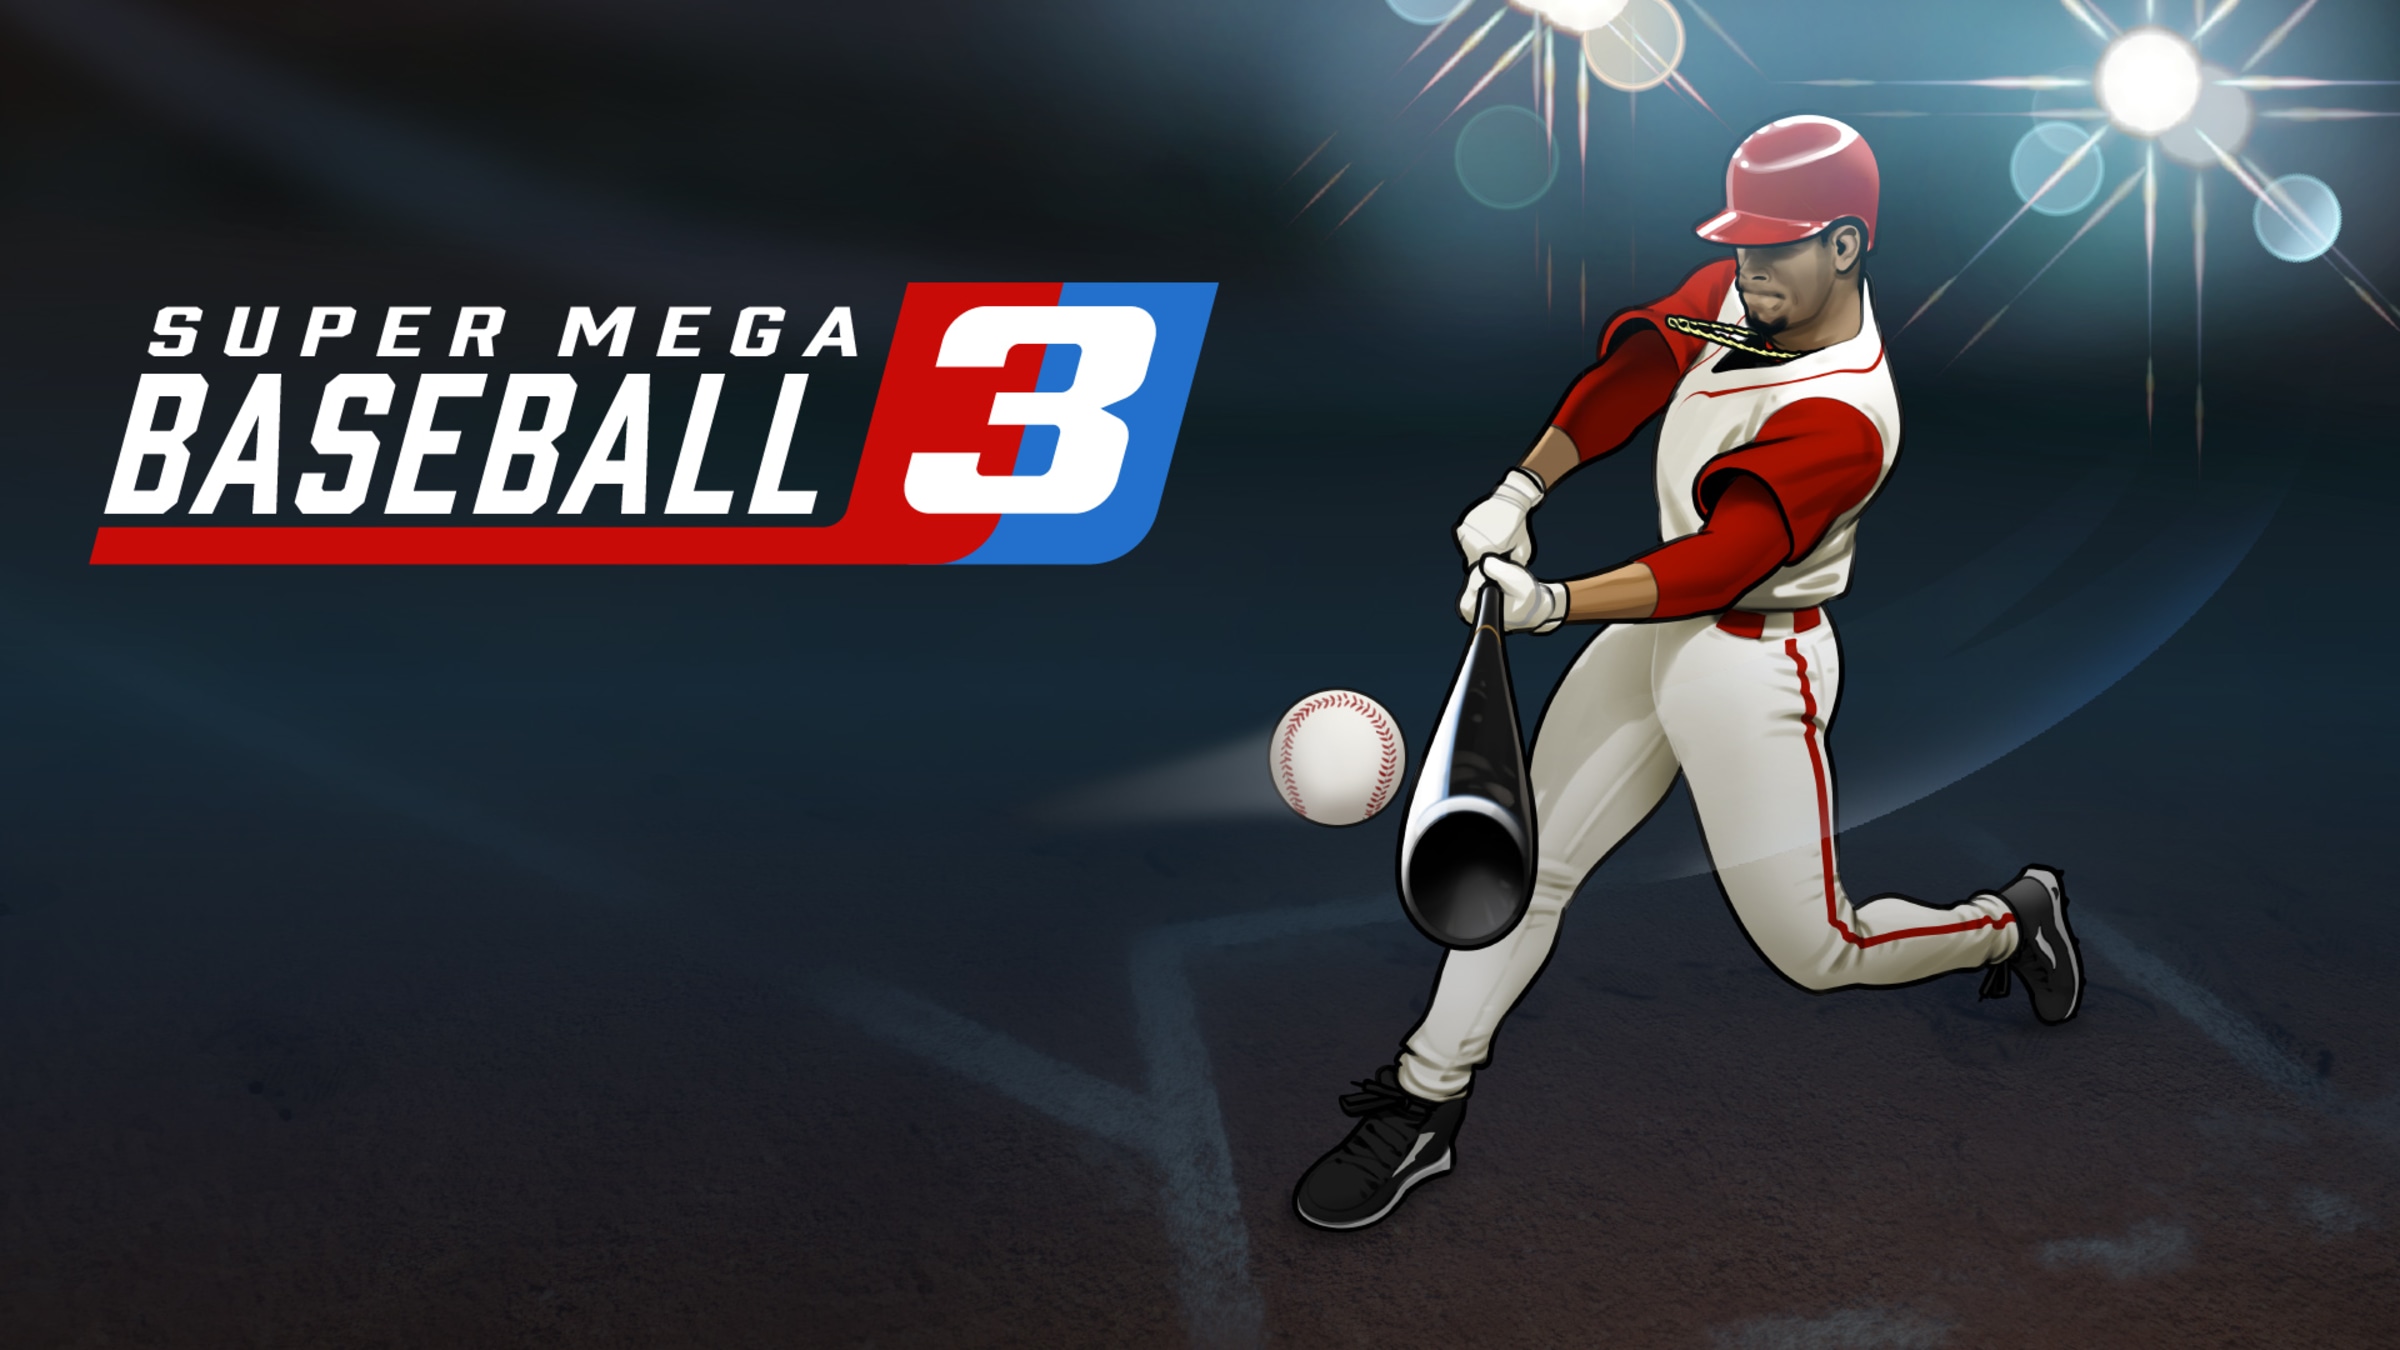 an image of Super Mega Baseball 3